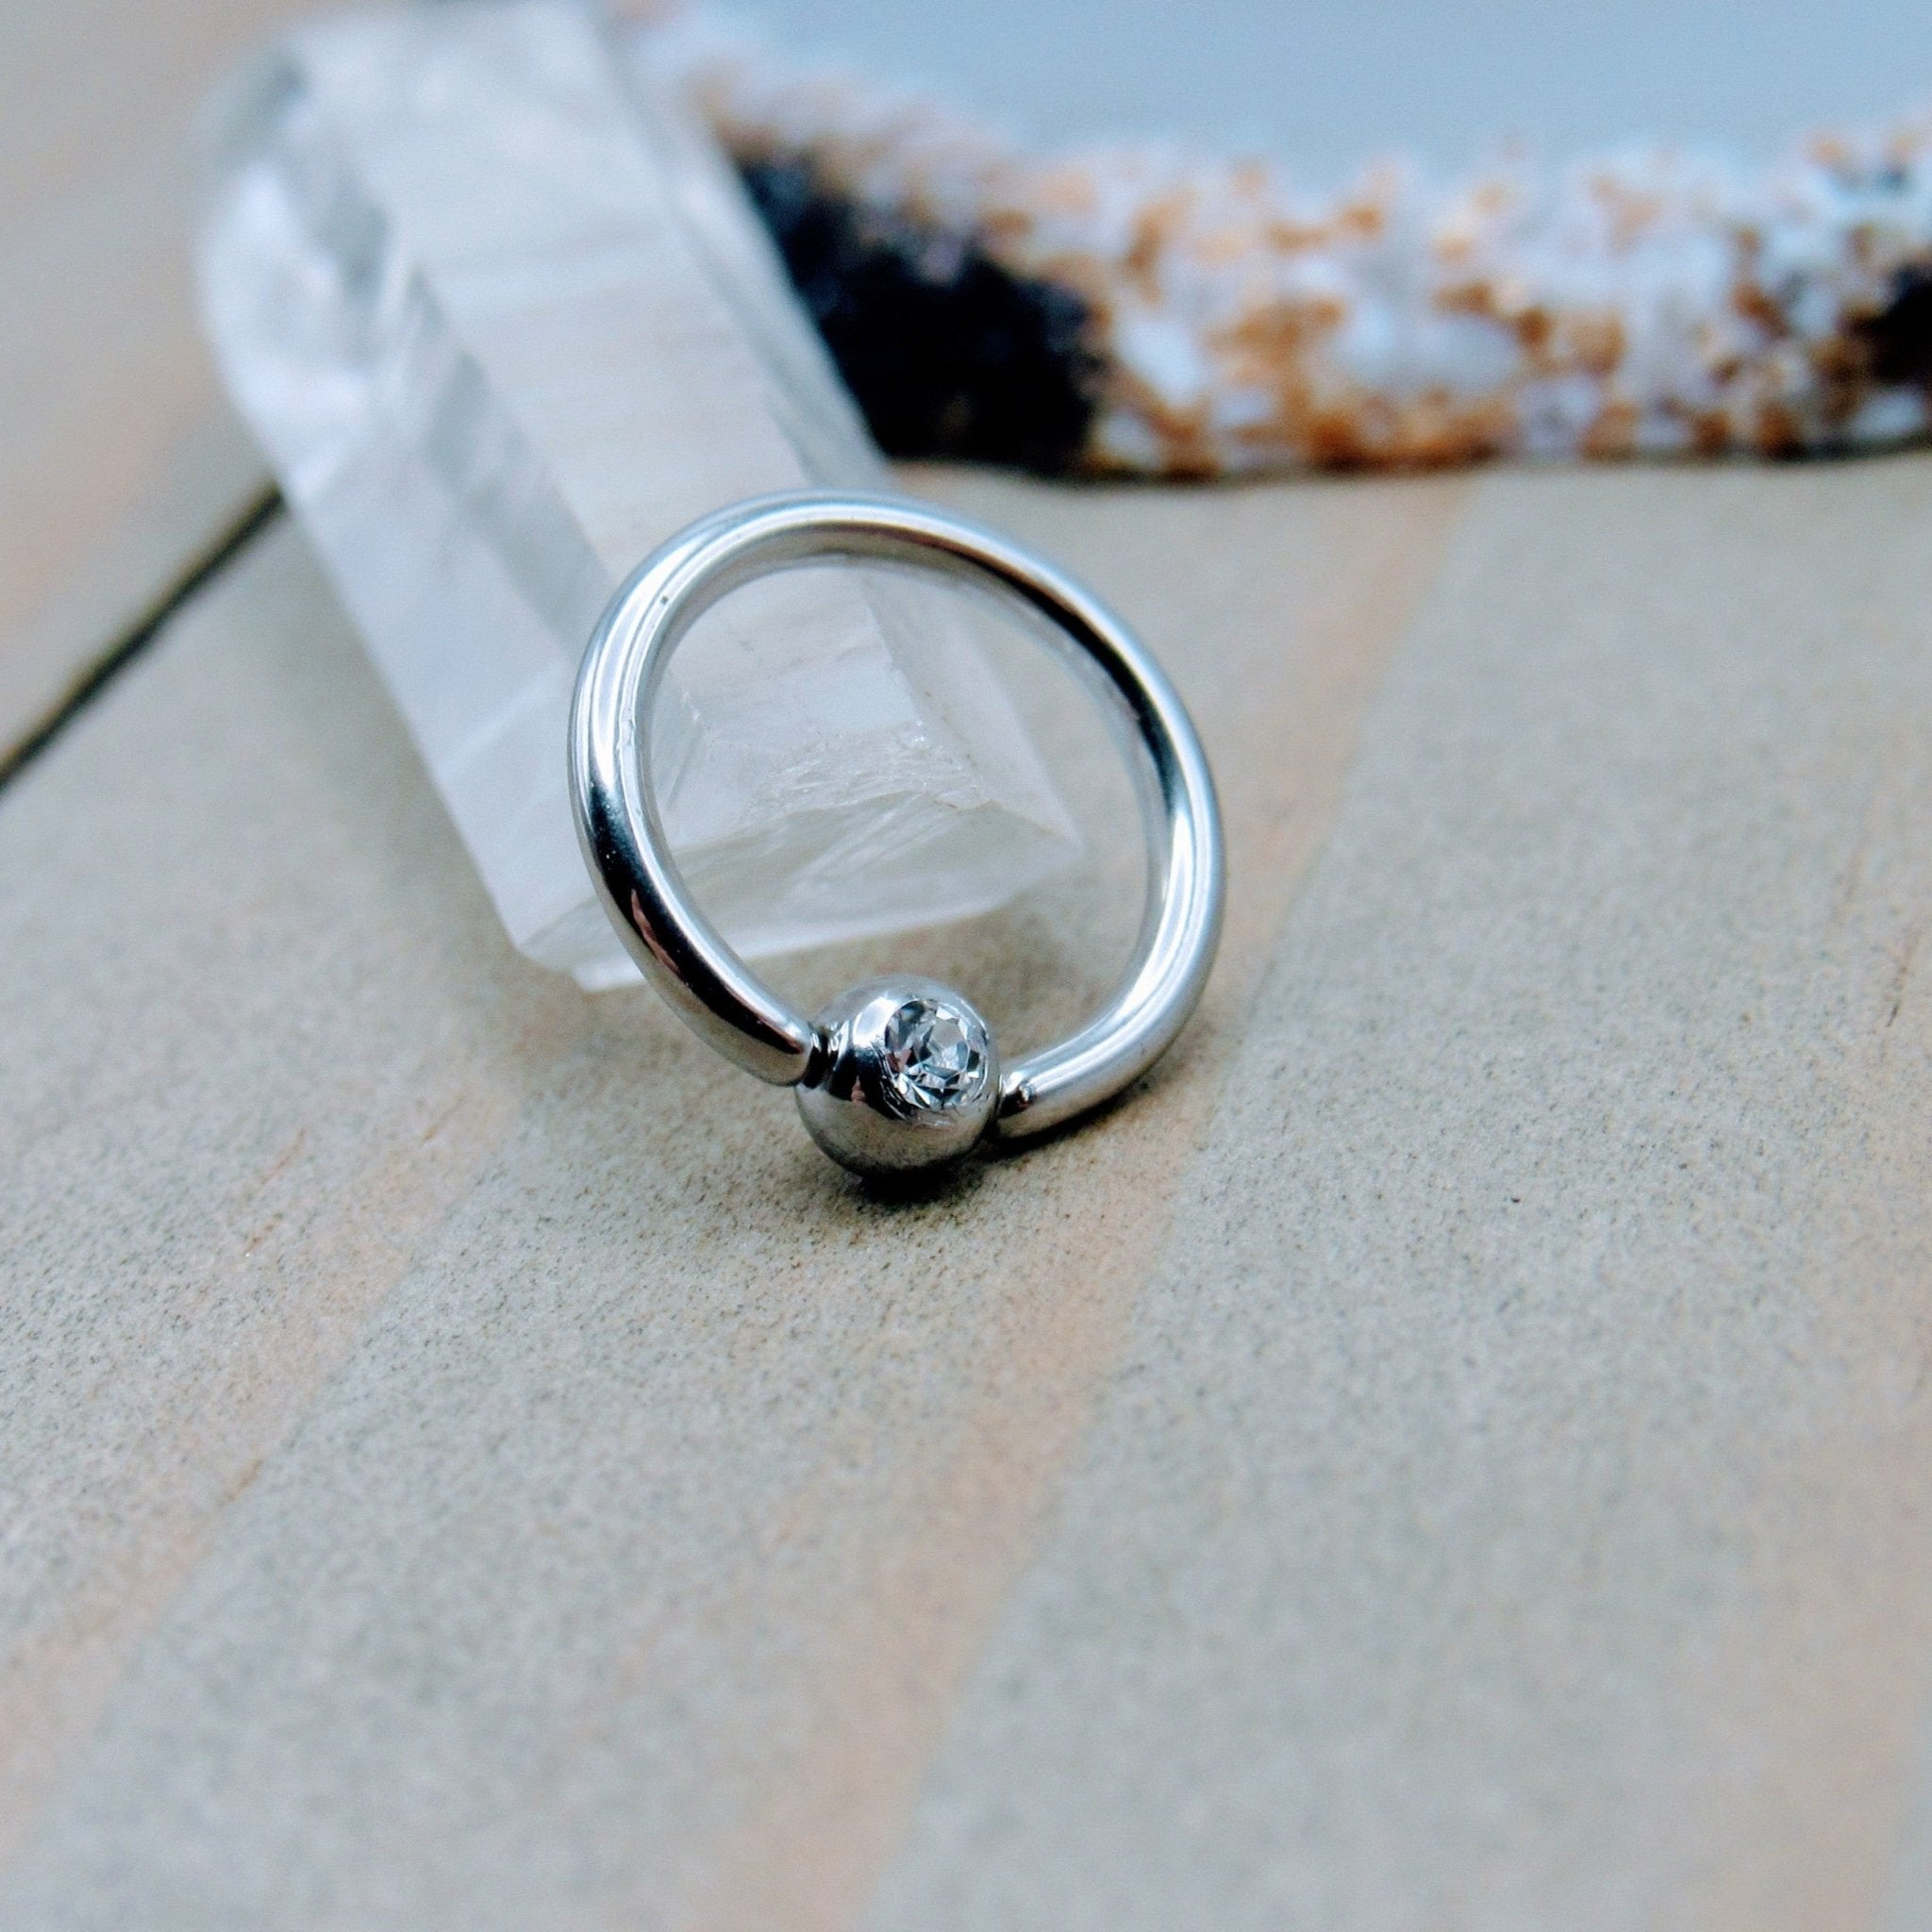 Annealed 16g Gemstone Fixed Bead Ring Piercing Hoop Earring Stainless Steel